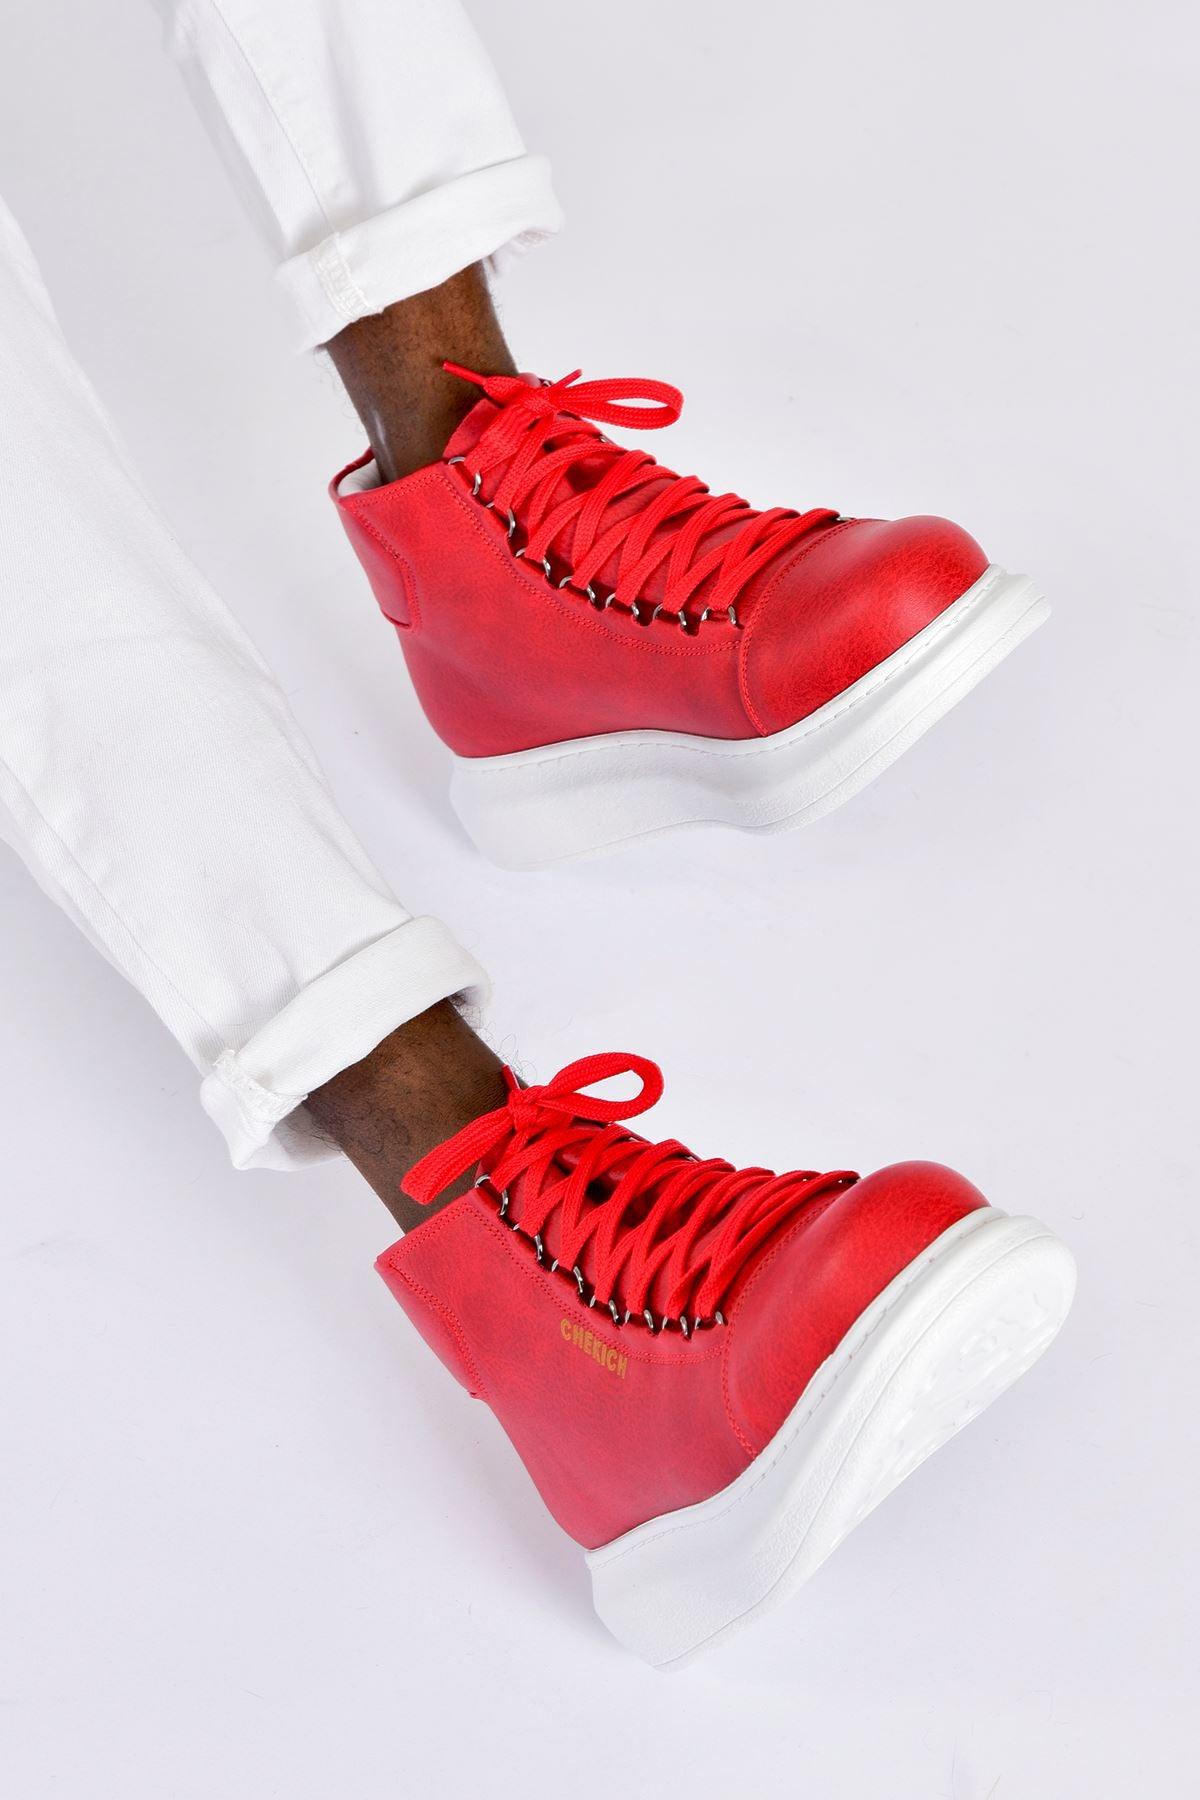 CH258 BT Men's Boots RED - STREET MODE ™